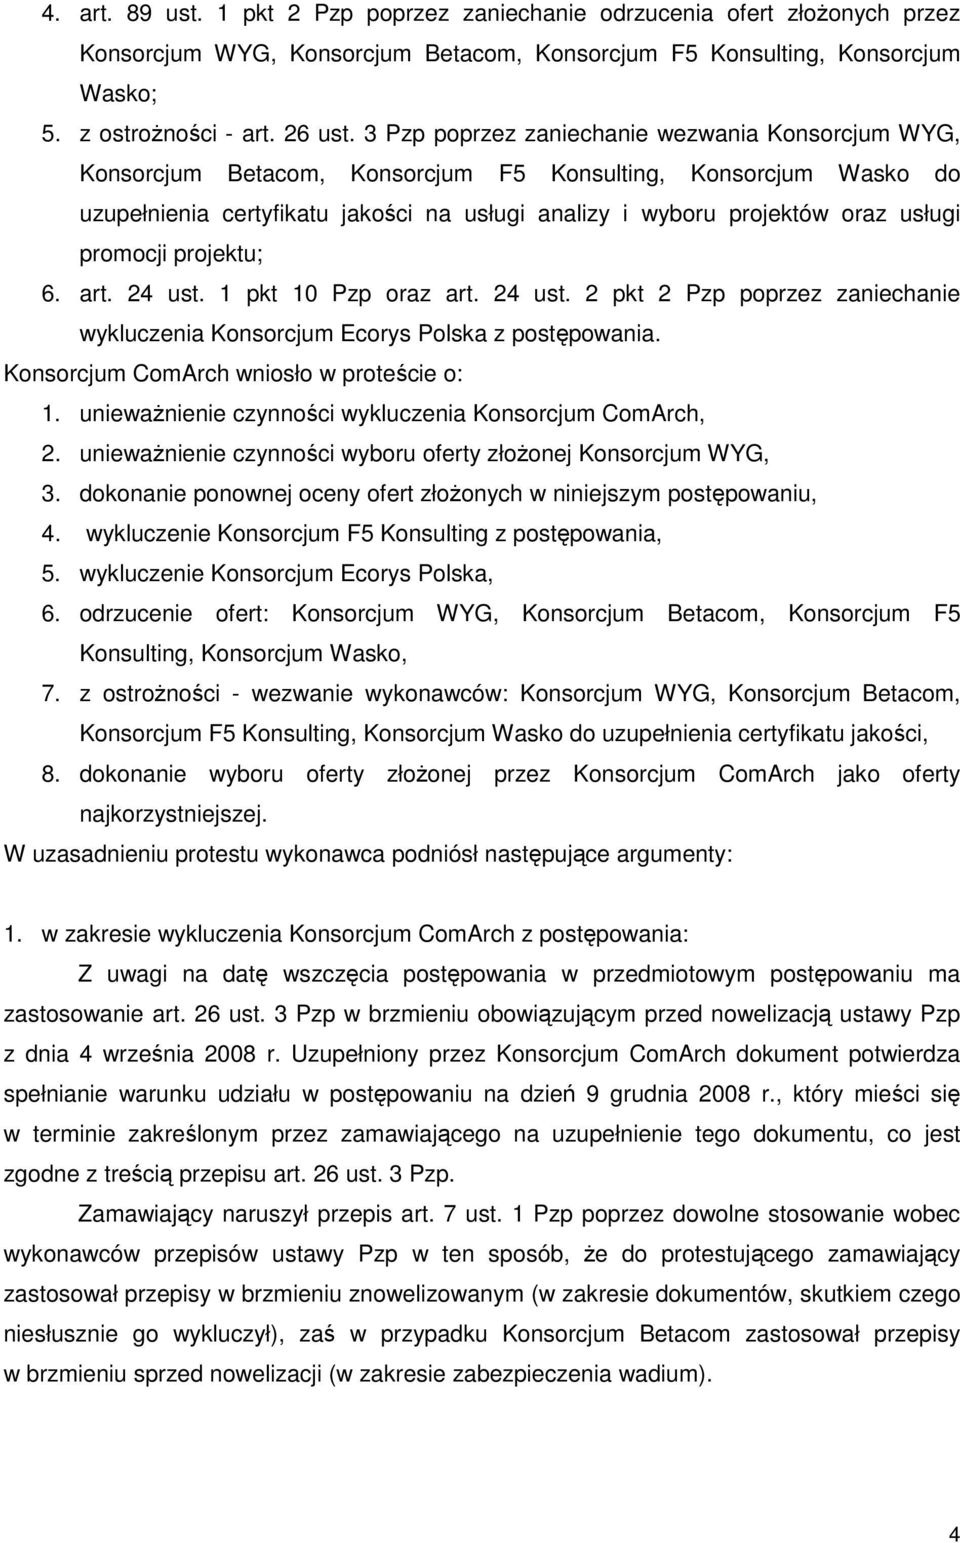 promocji projektu; 6. art. 24 ust. 1 pkt 10 Pzp oraz art. 24 ust. 2 pkt 2 Pzp poprzez zaniechanie wykluczenia Konsorcjum Ecorys Polska z postępowania. Konsorcjum ComArch wniosło w proteście o: 1.